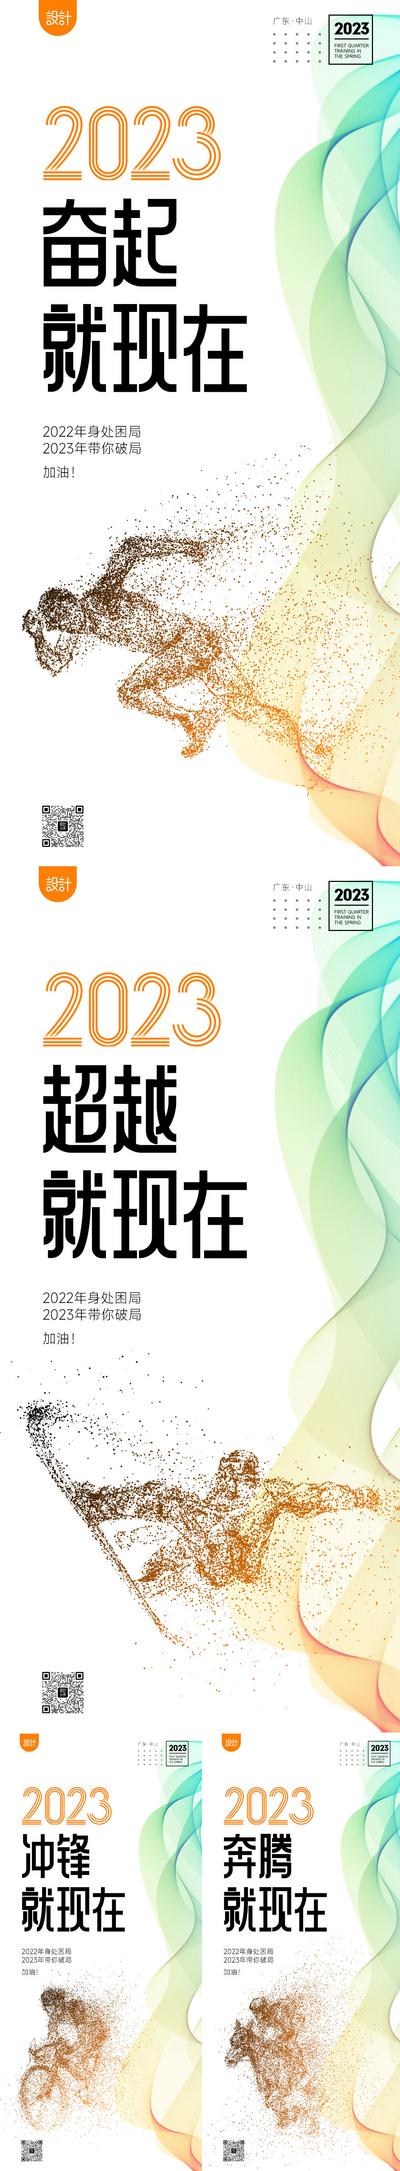 南门网 海报 激励 励志 奋斗 拼搏 奔跑 奔跑2023 加油 企业文化 运动 早安